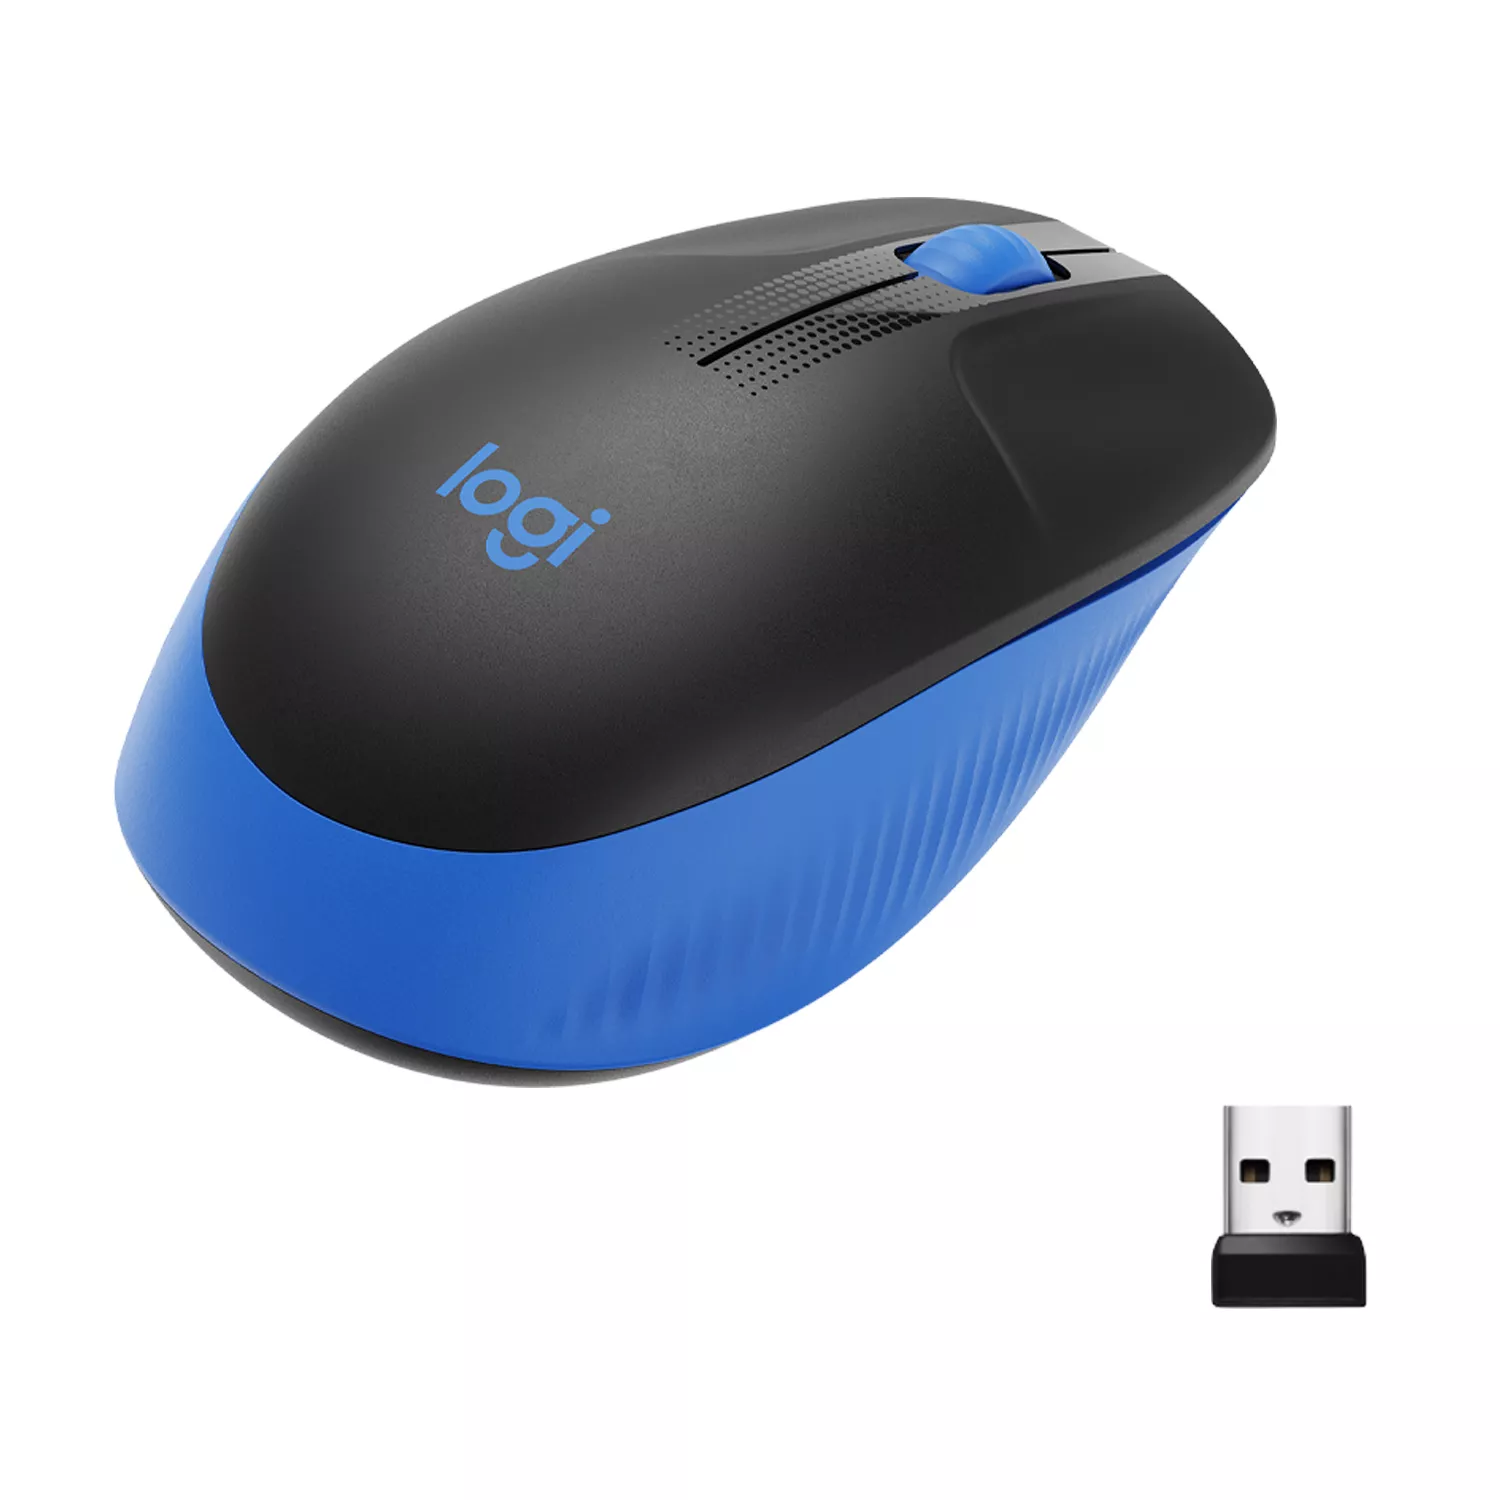 Vente LOGITECH M190 Mouse optical 3 buttons wireless USB Logitech au meilleur prix - visuel 2